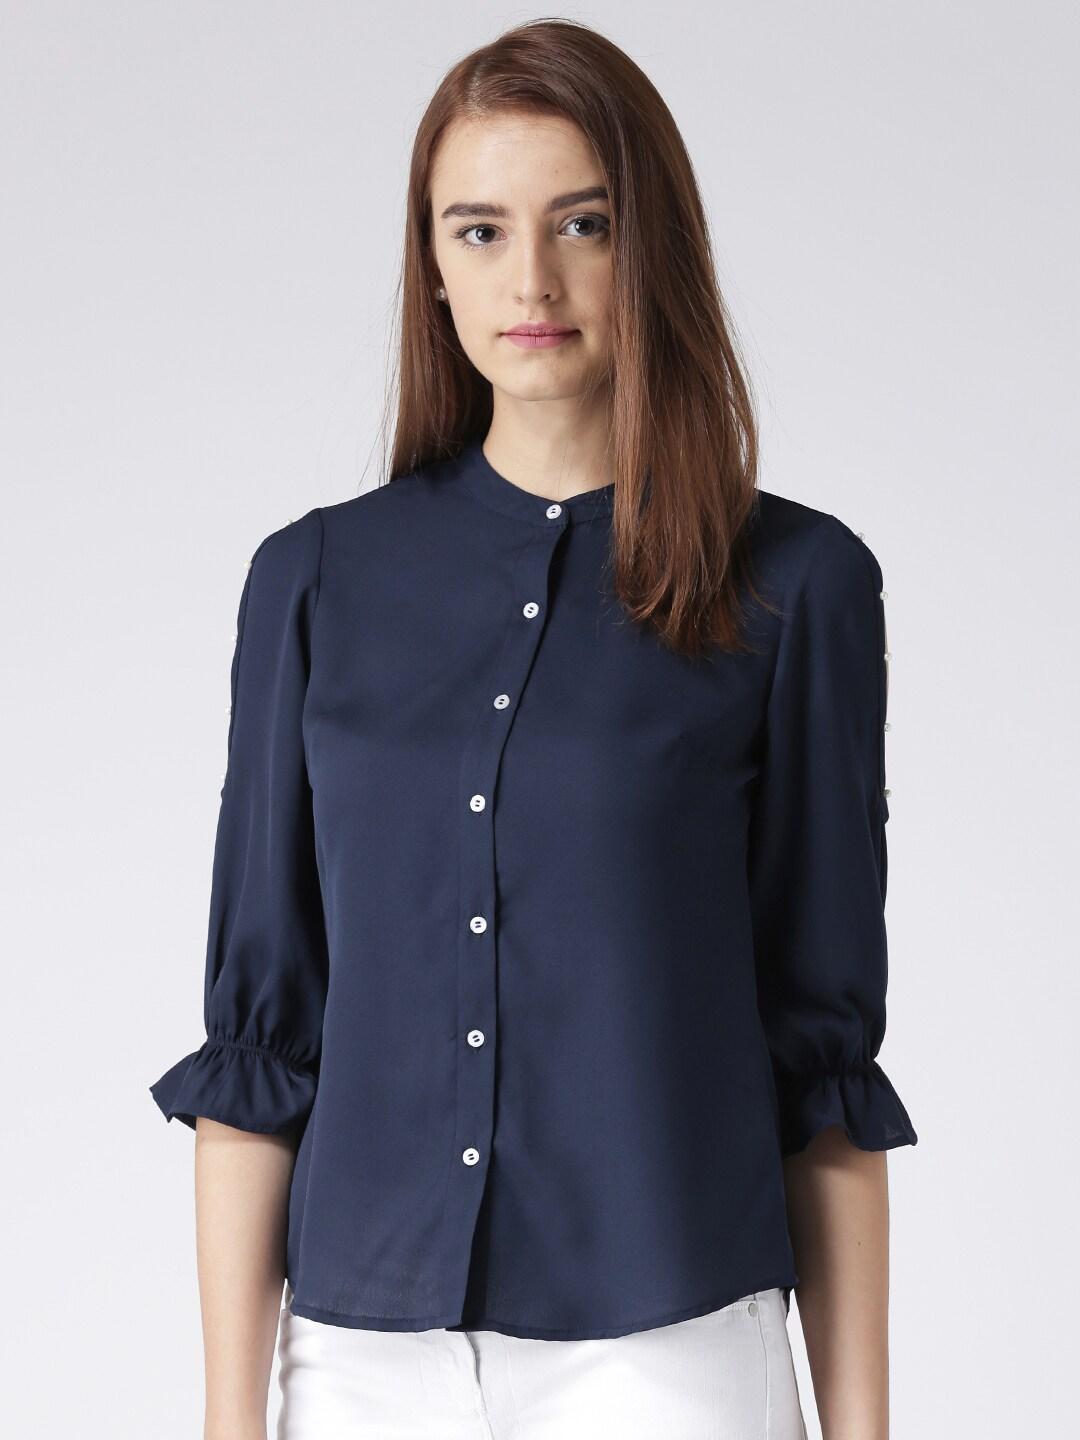 KASSUALLY Women Navy Blue Comfort Regular Fit Solid Formal Shirt